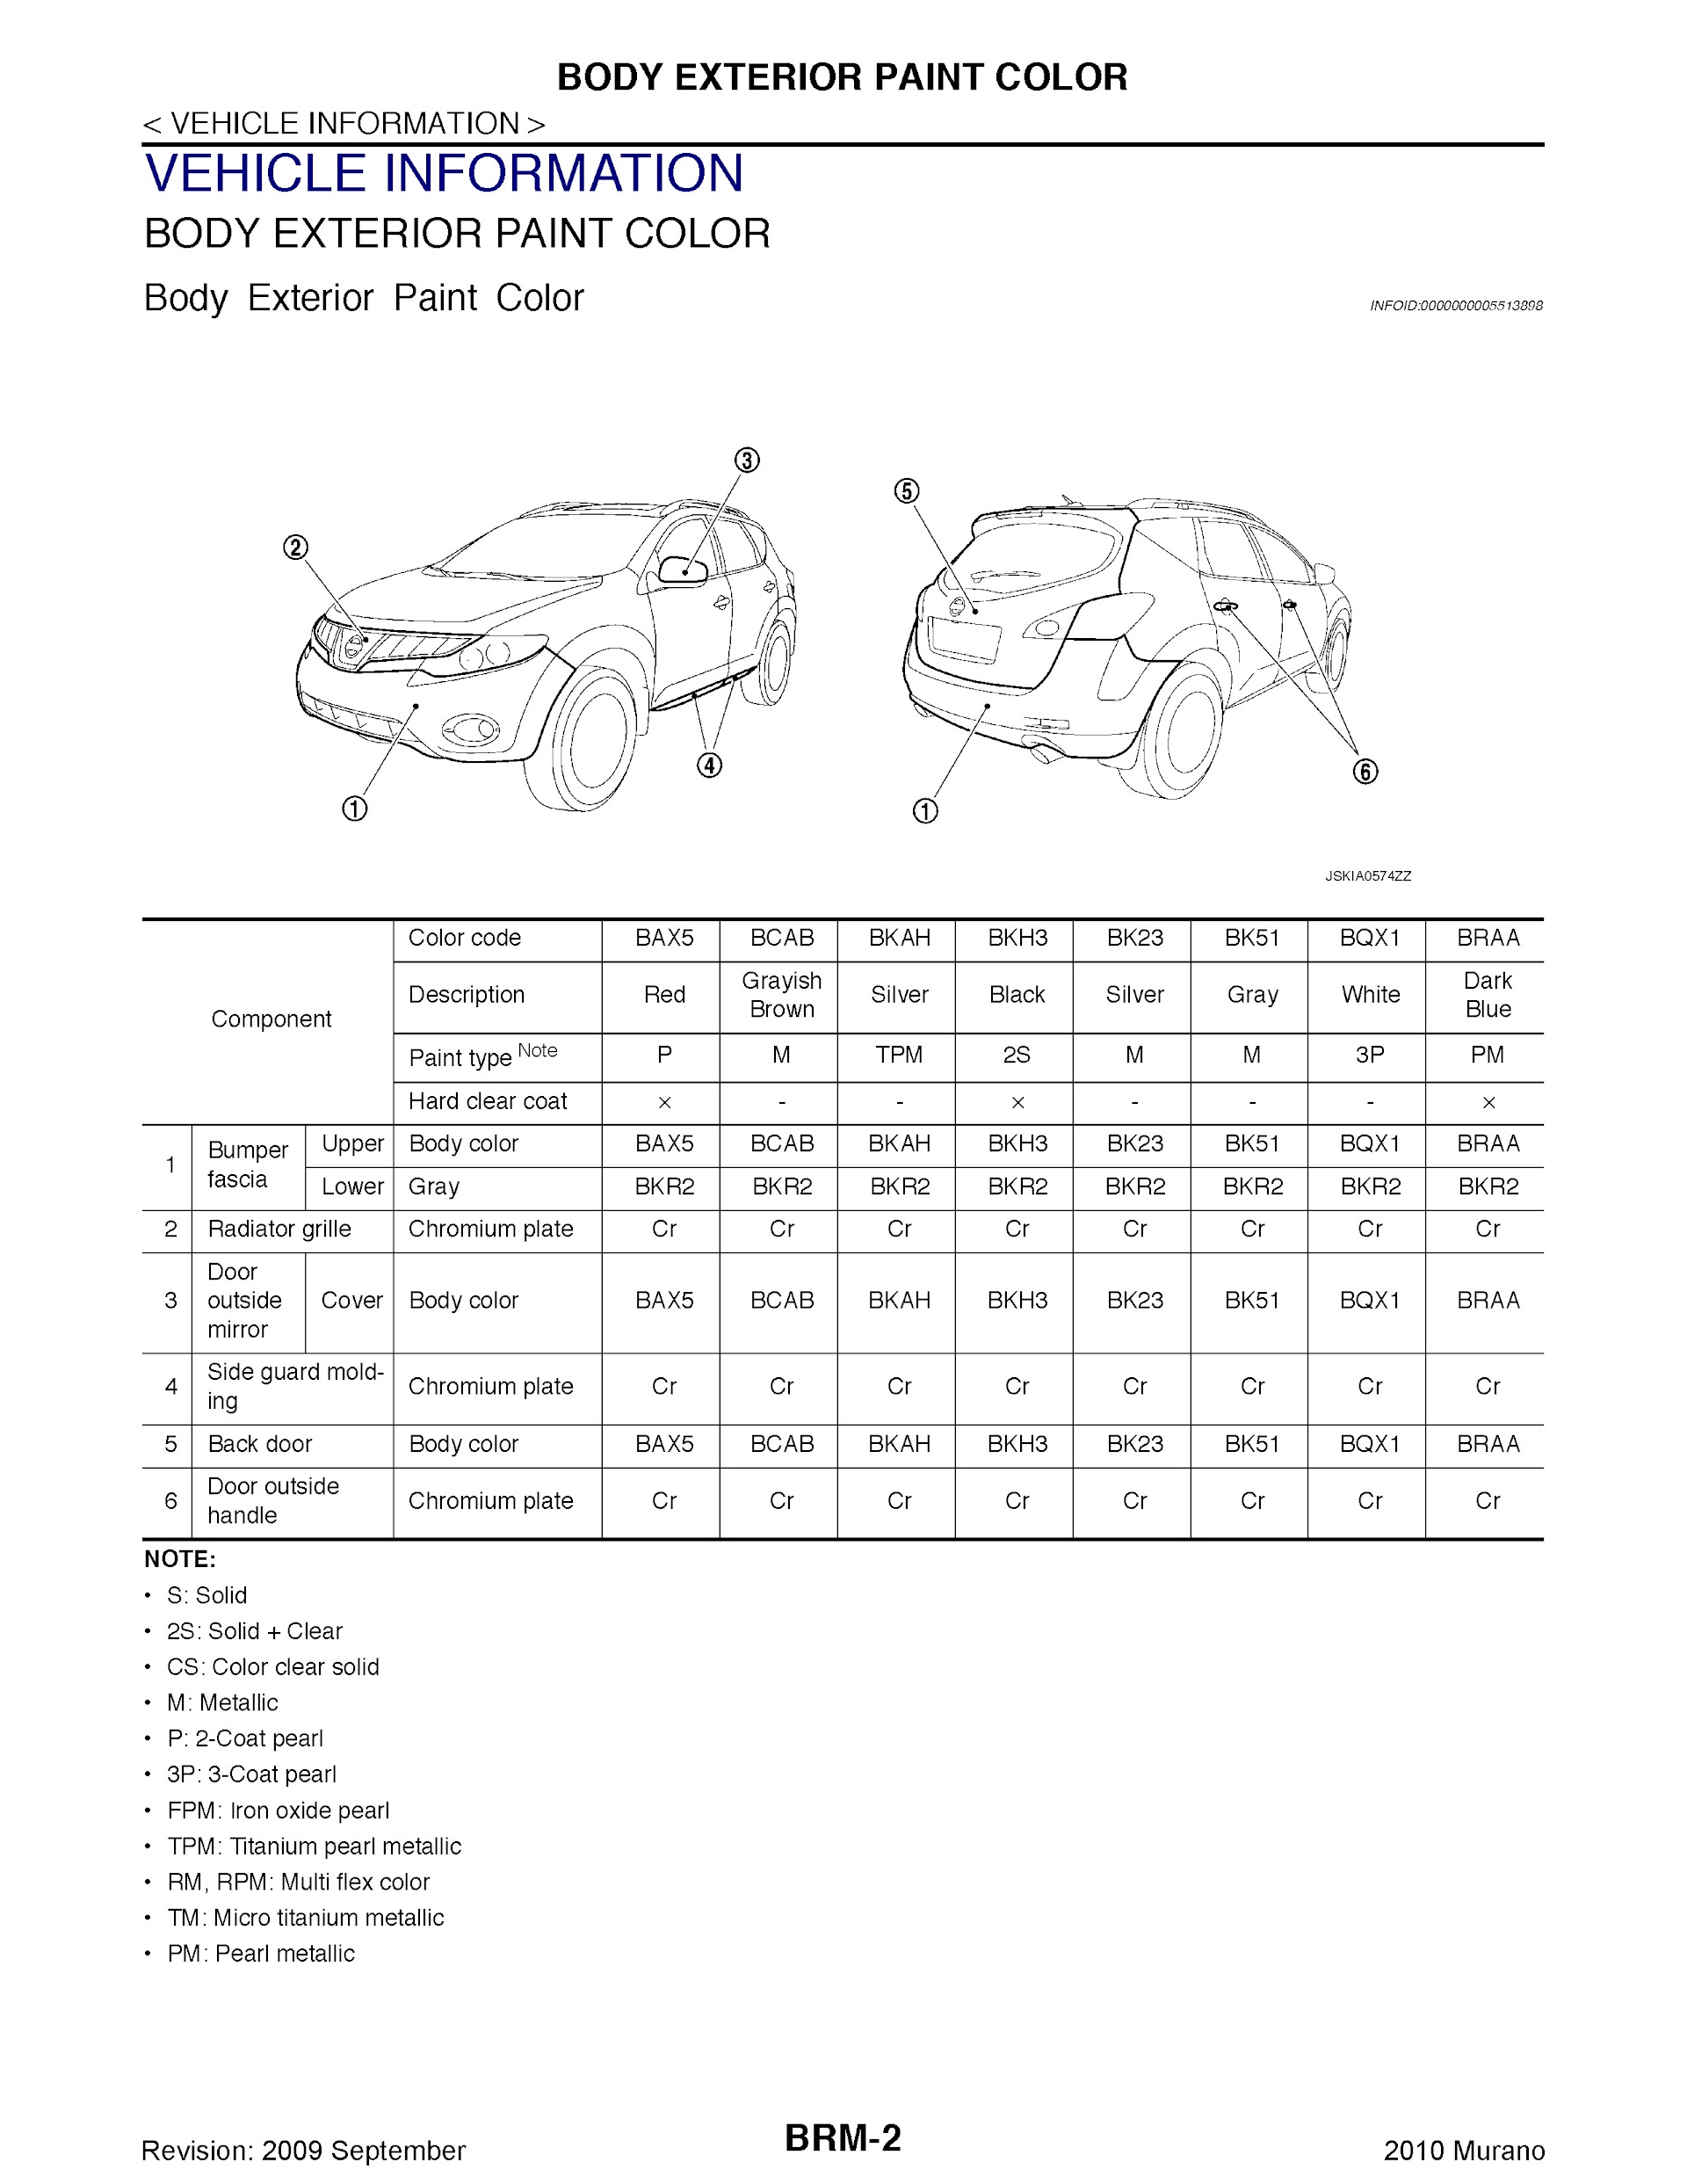 Download 2010 Nissan Murano Repair Manual.